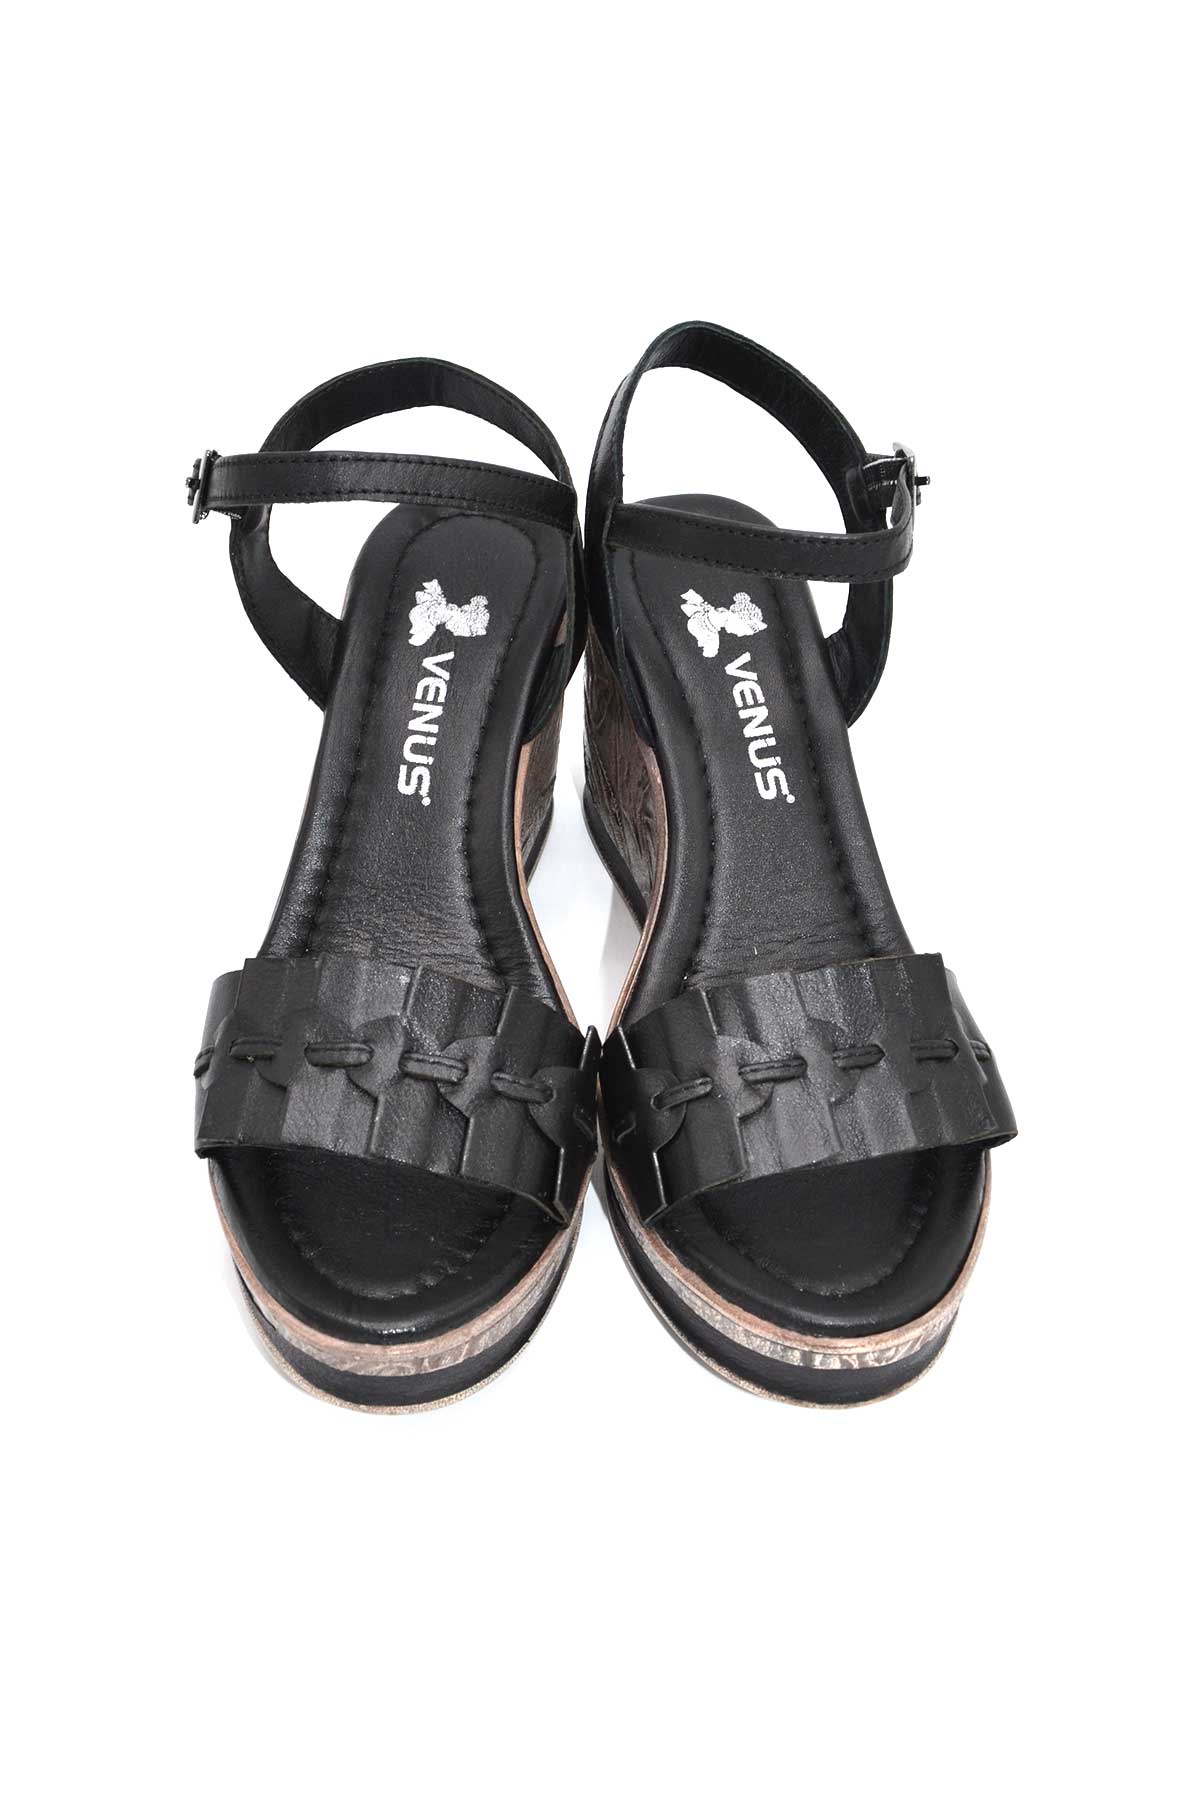 Kadın Dolgu Topuk Deri Sandalet Siyah 2015715Y